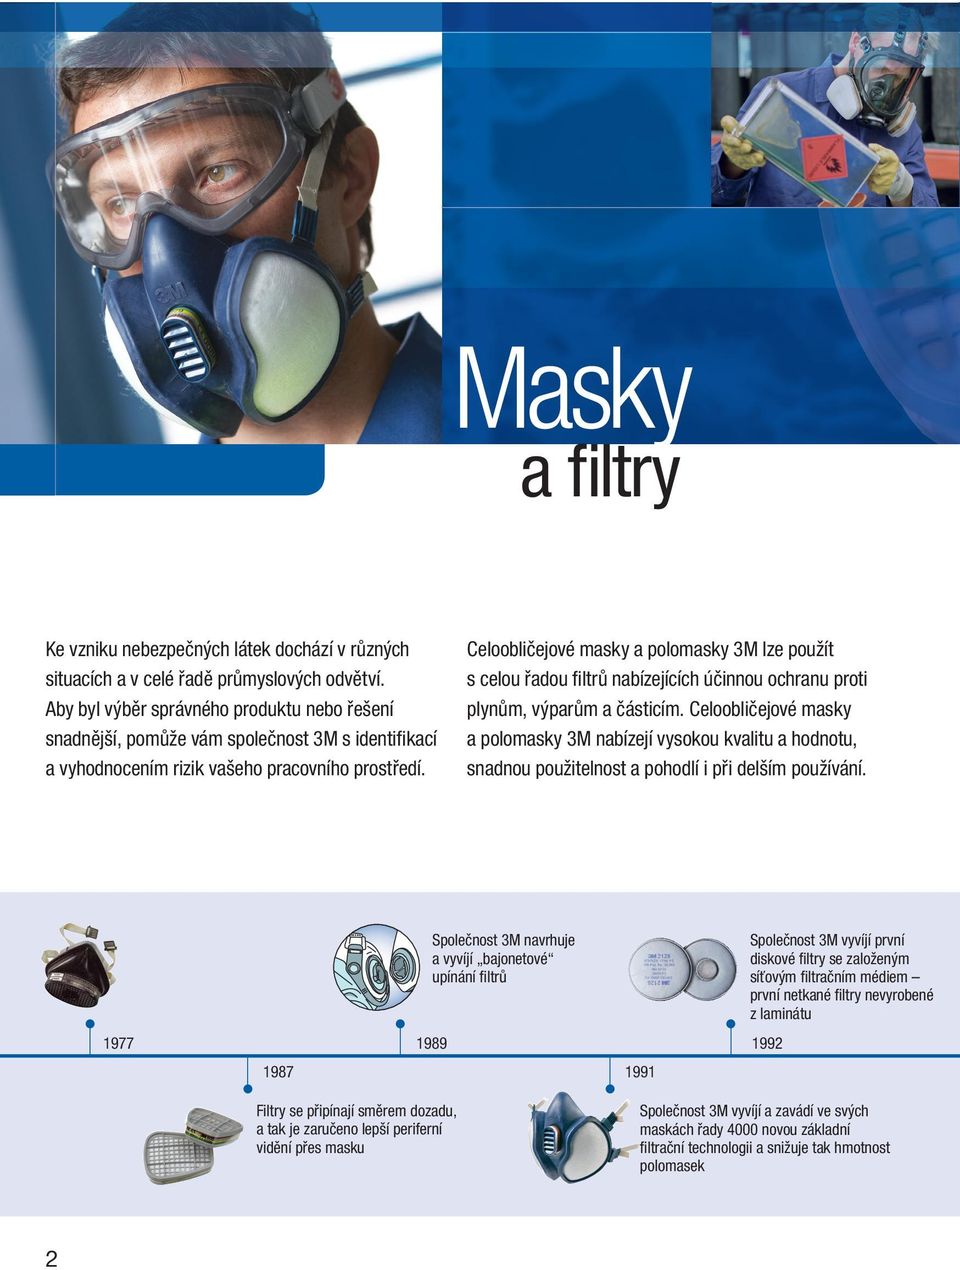 Celoobličejové masky a polomasky 3M lze použít s celou řadou fi ltrů nabízejících účinnou ochranu proti plynům, výparům a částicím.